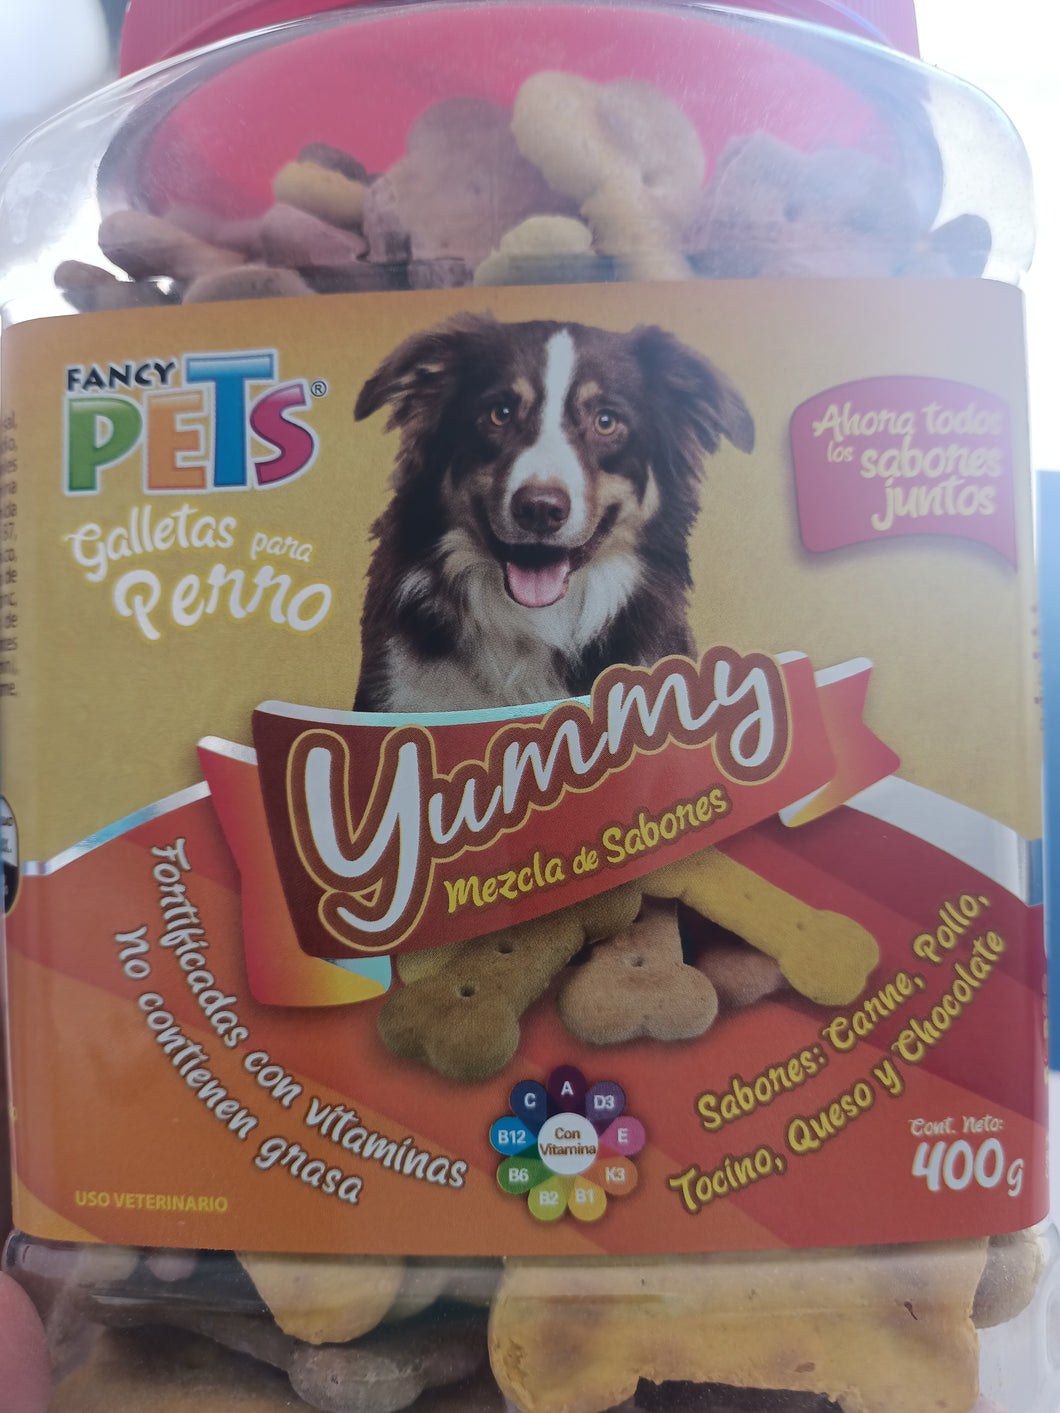 Premio Galletas para perro Yummy sabores